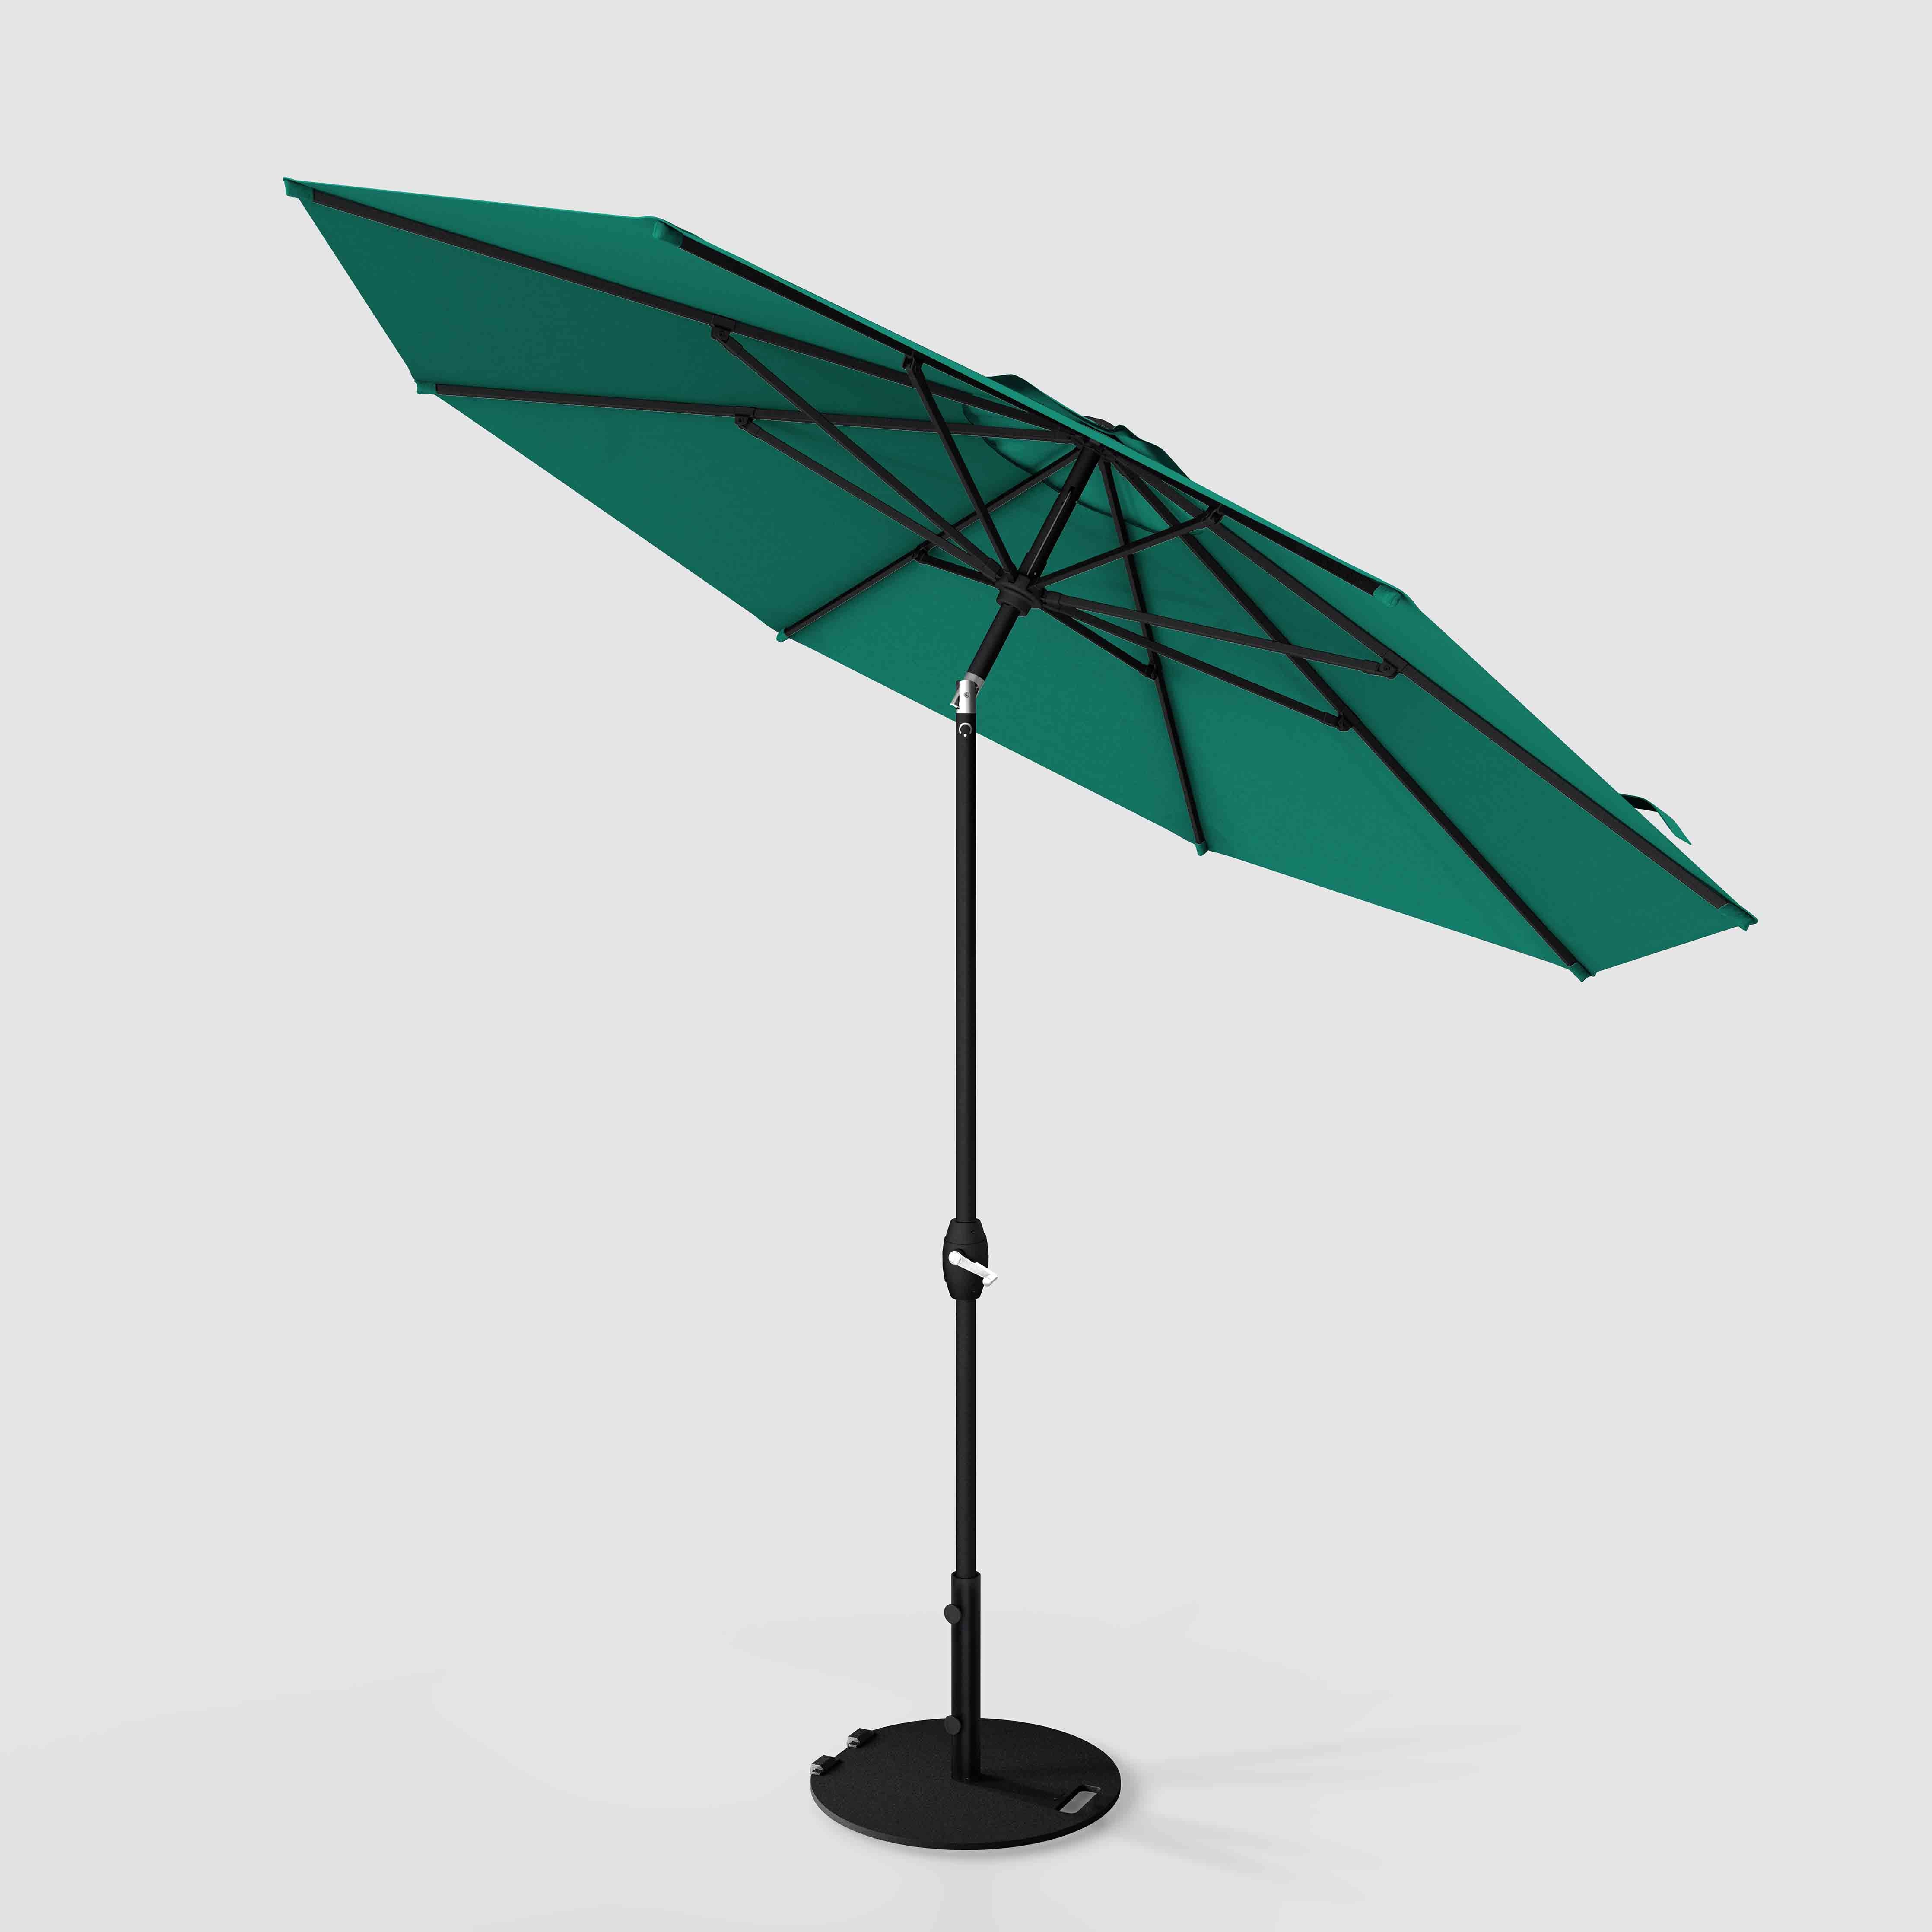 The Lean™ - Sunbrella Canvas Teal